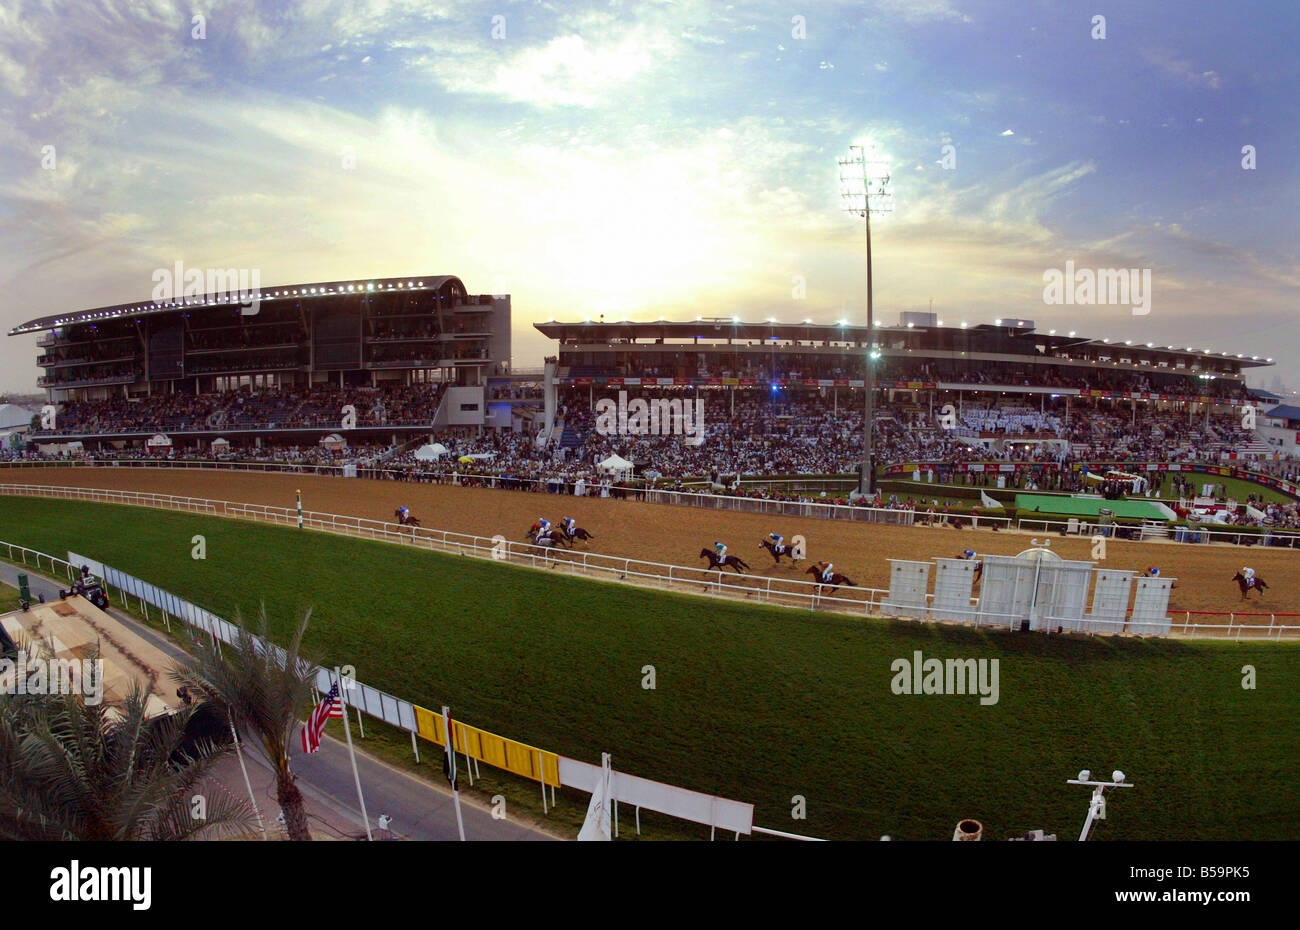 The Nad Al Sheba horse race course, Dubai, United Arab Emirates Stock Photo